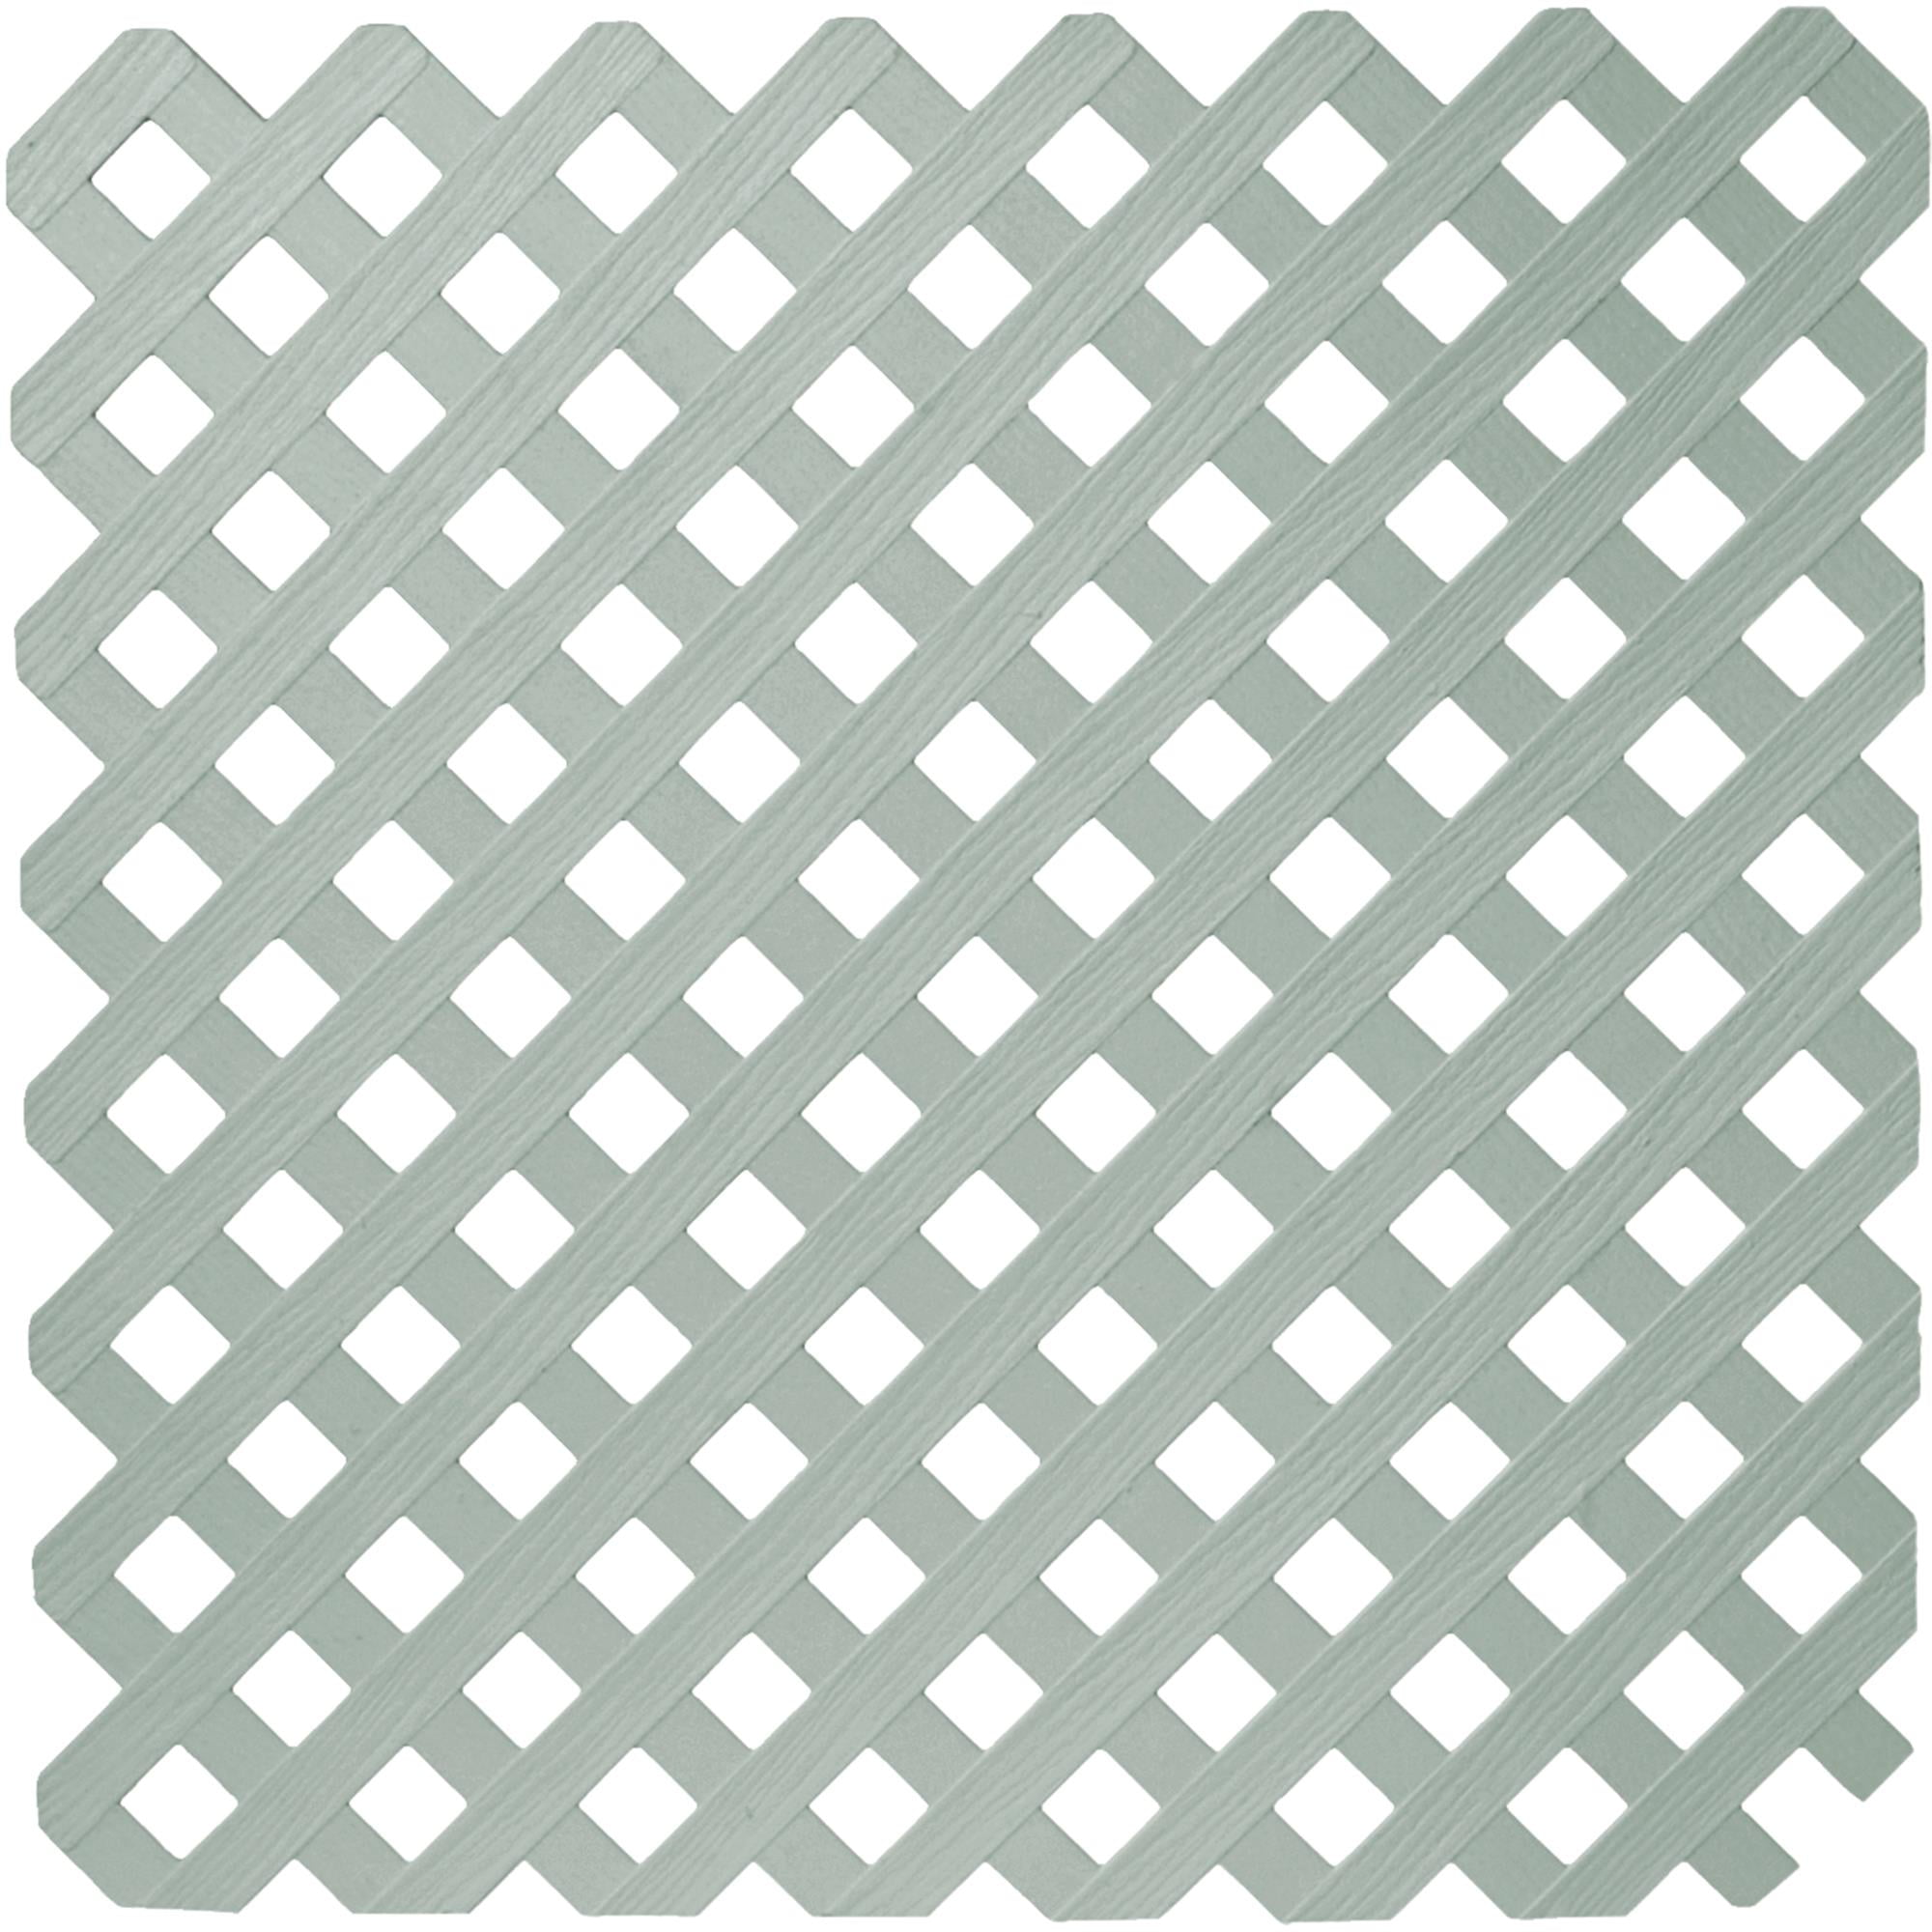 plastic lattice panels